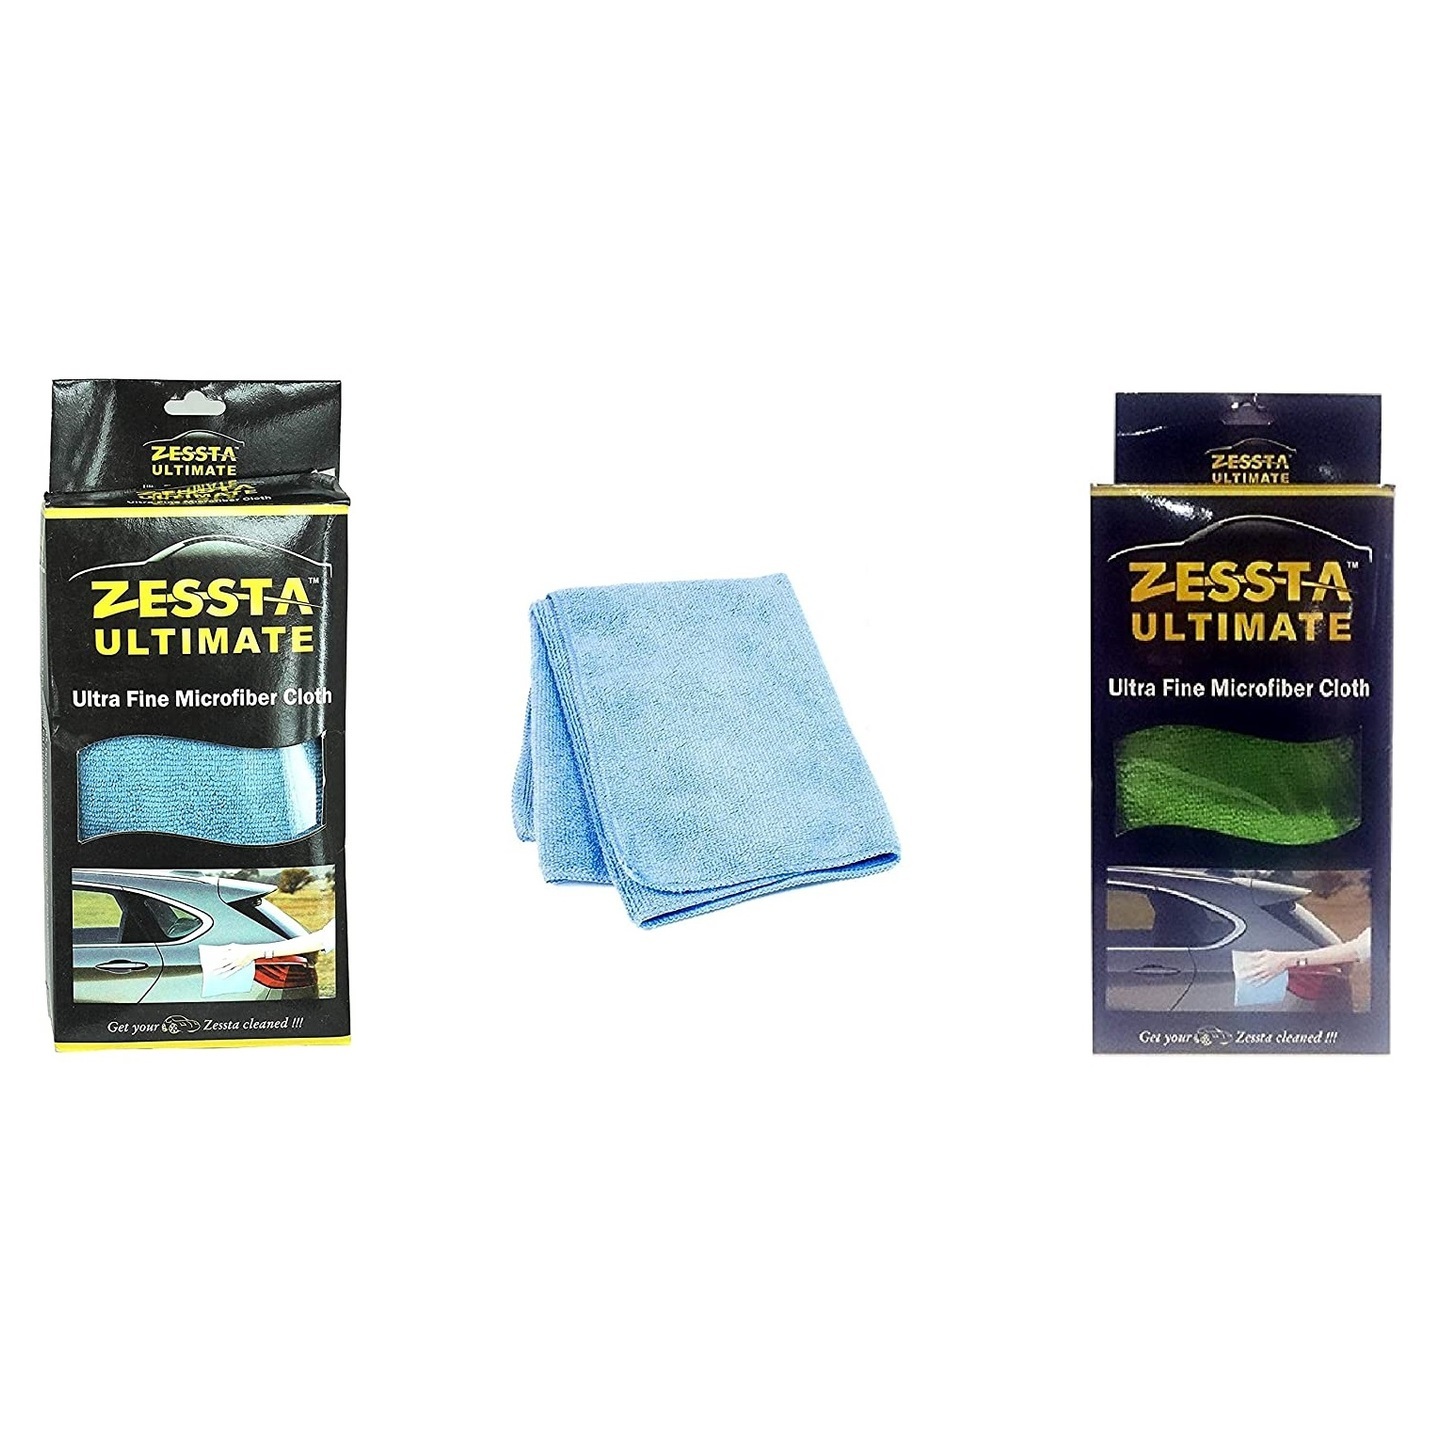 ZESSTA Ultra fine Microfiber Cloth 400 GSM 40 cm x 40 cm